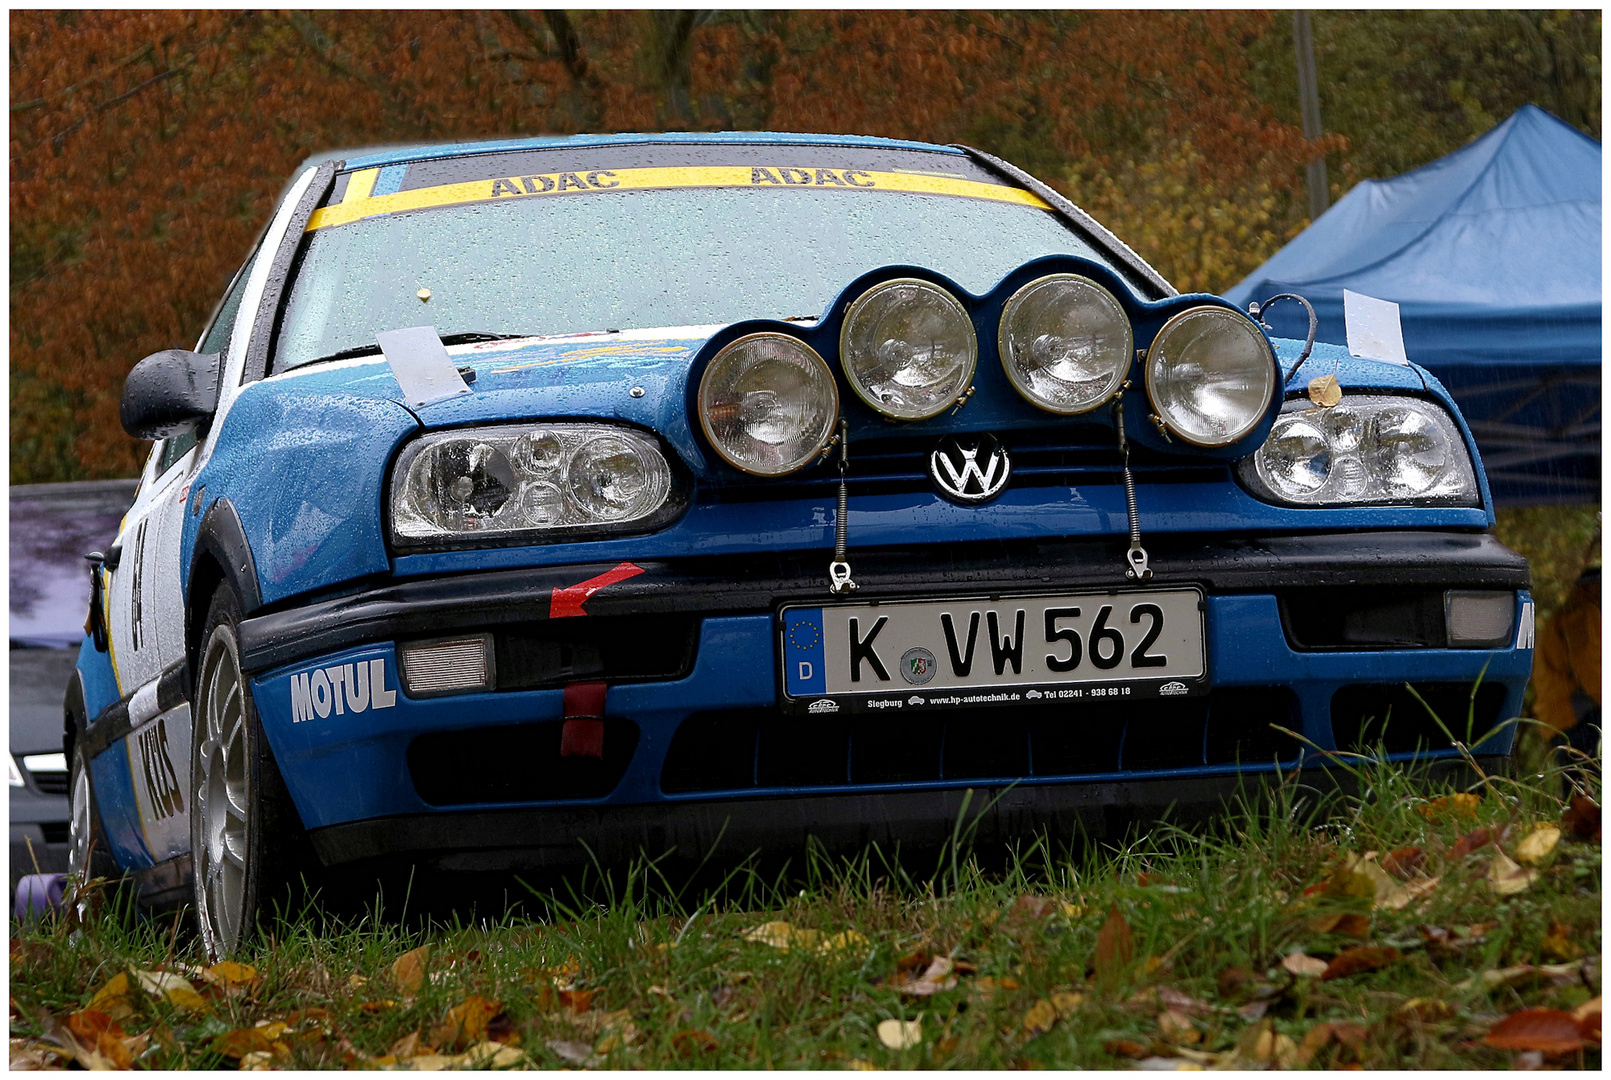 ++ VW Golf (Rallye) ++